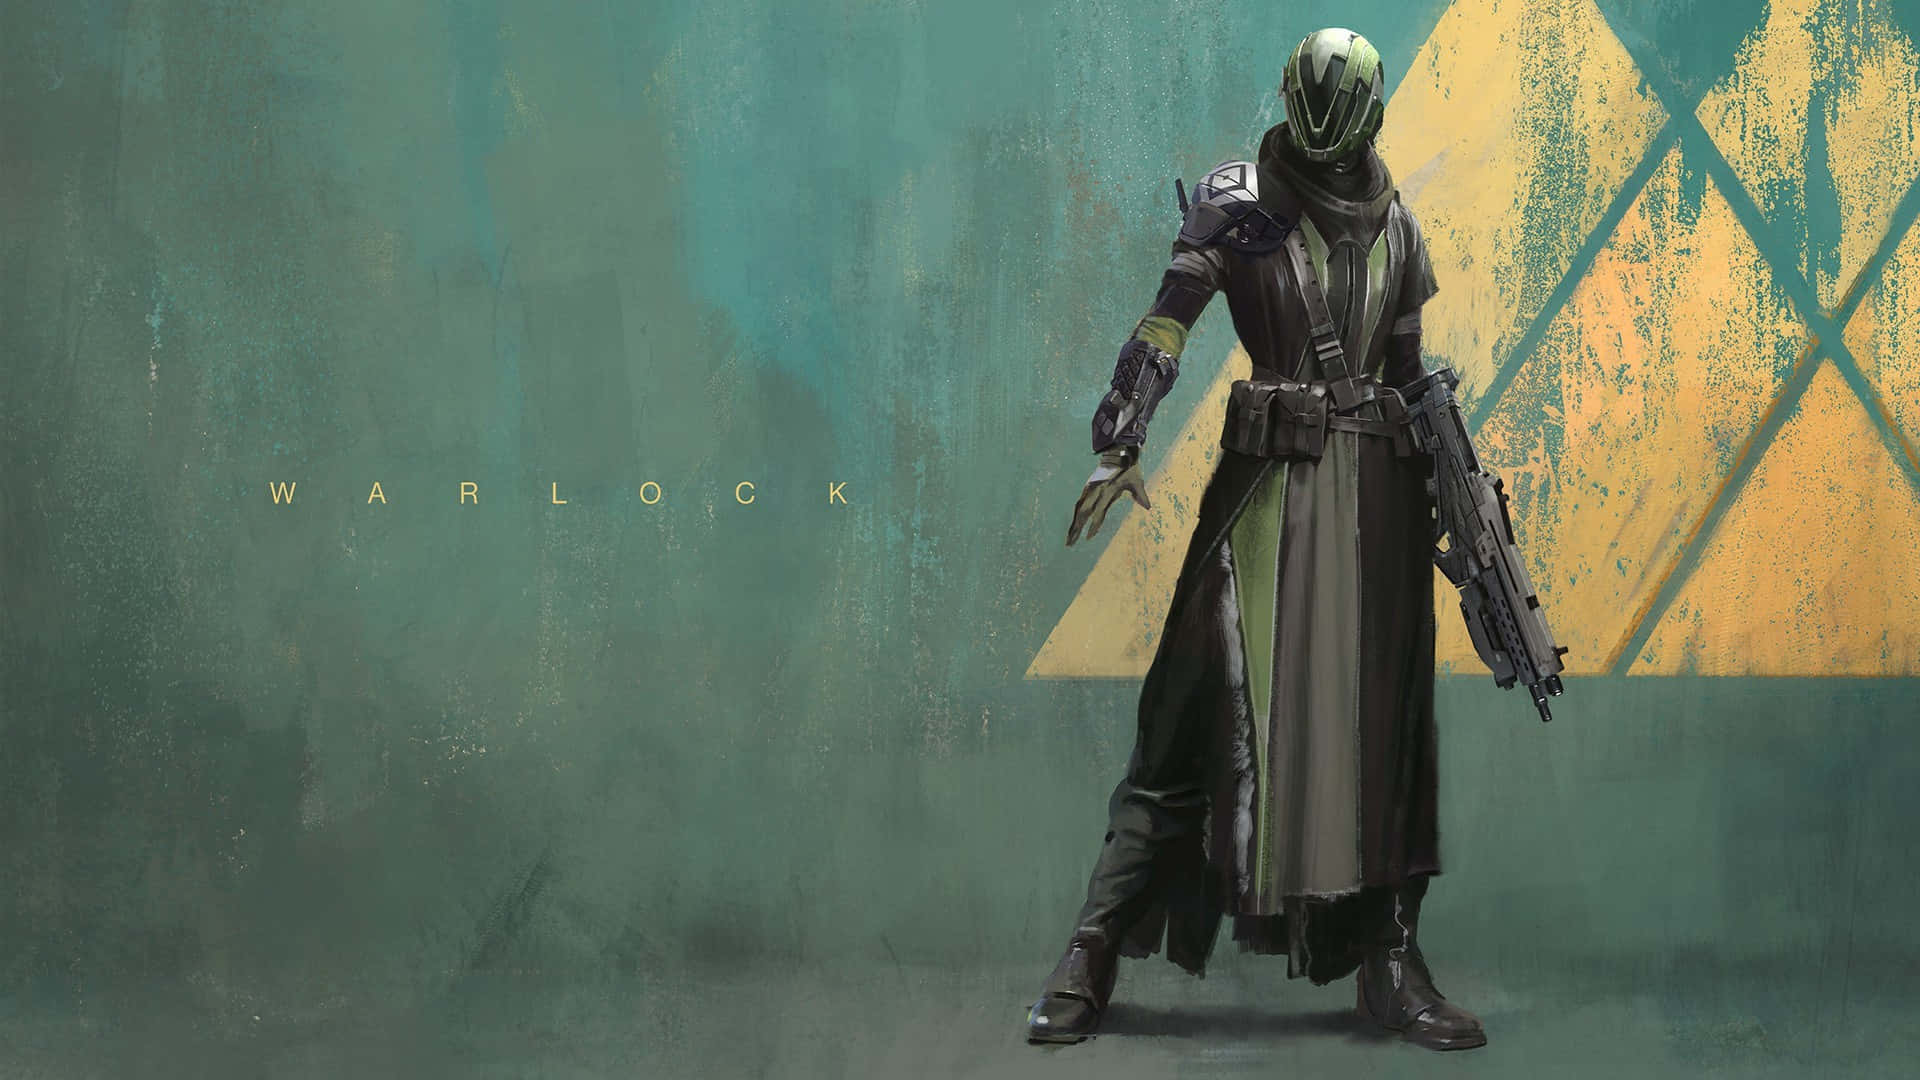 Enwarlock Från Destiny 2, Redo För Action. Wallpaper